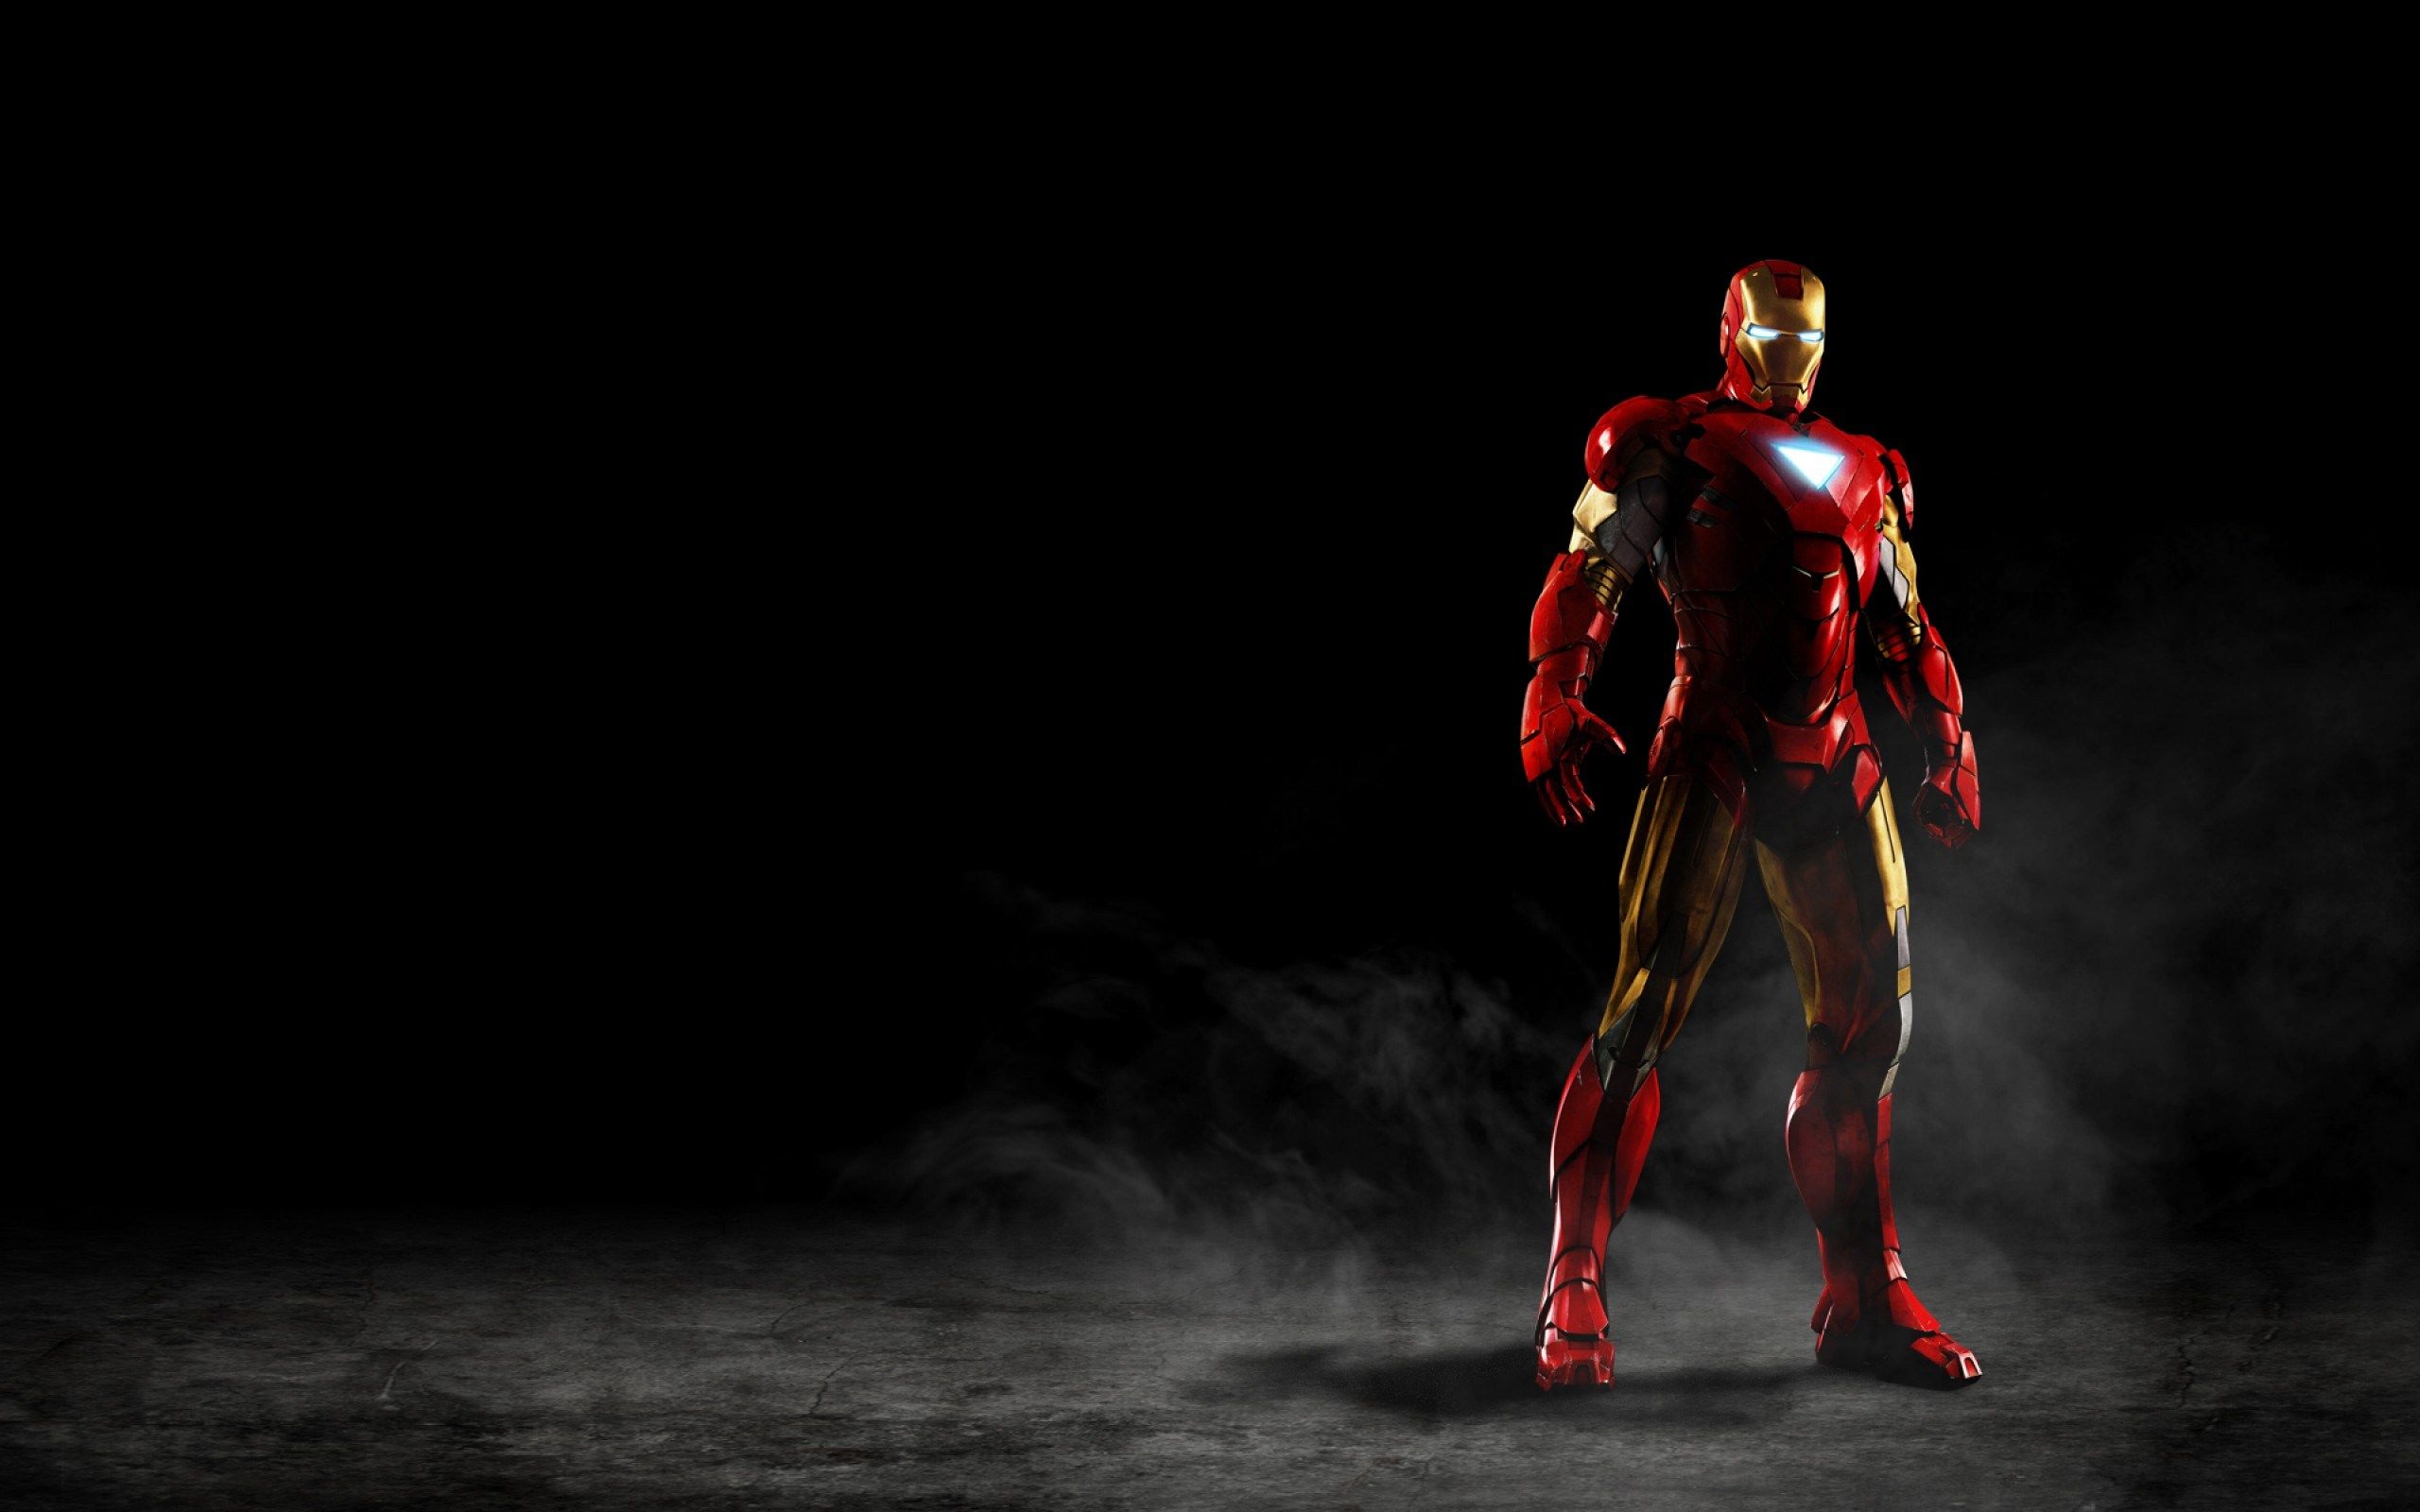 Iron Man Avengers Widescreen Wallpaper - Mbagusi.com